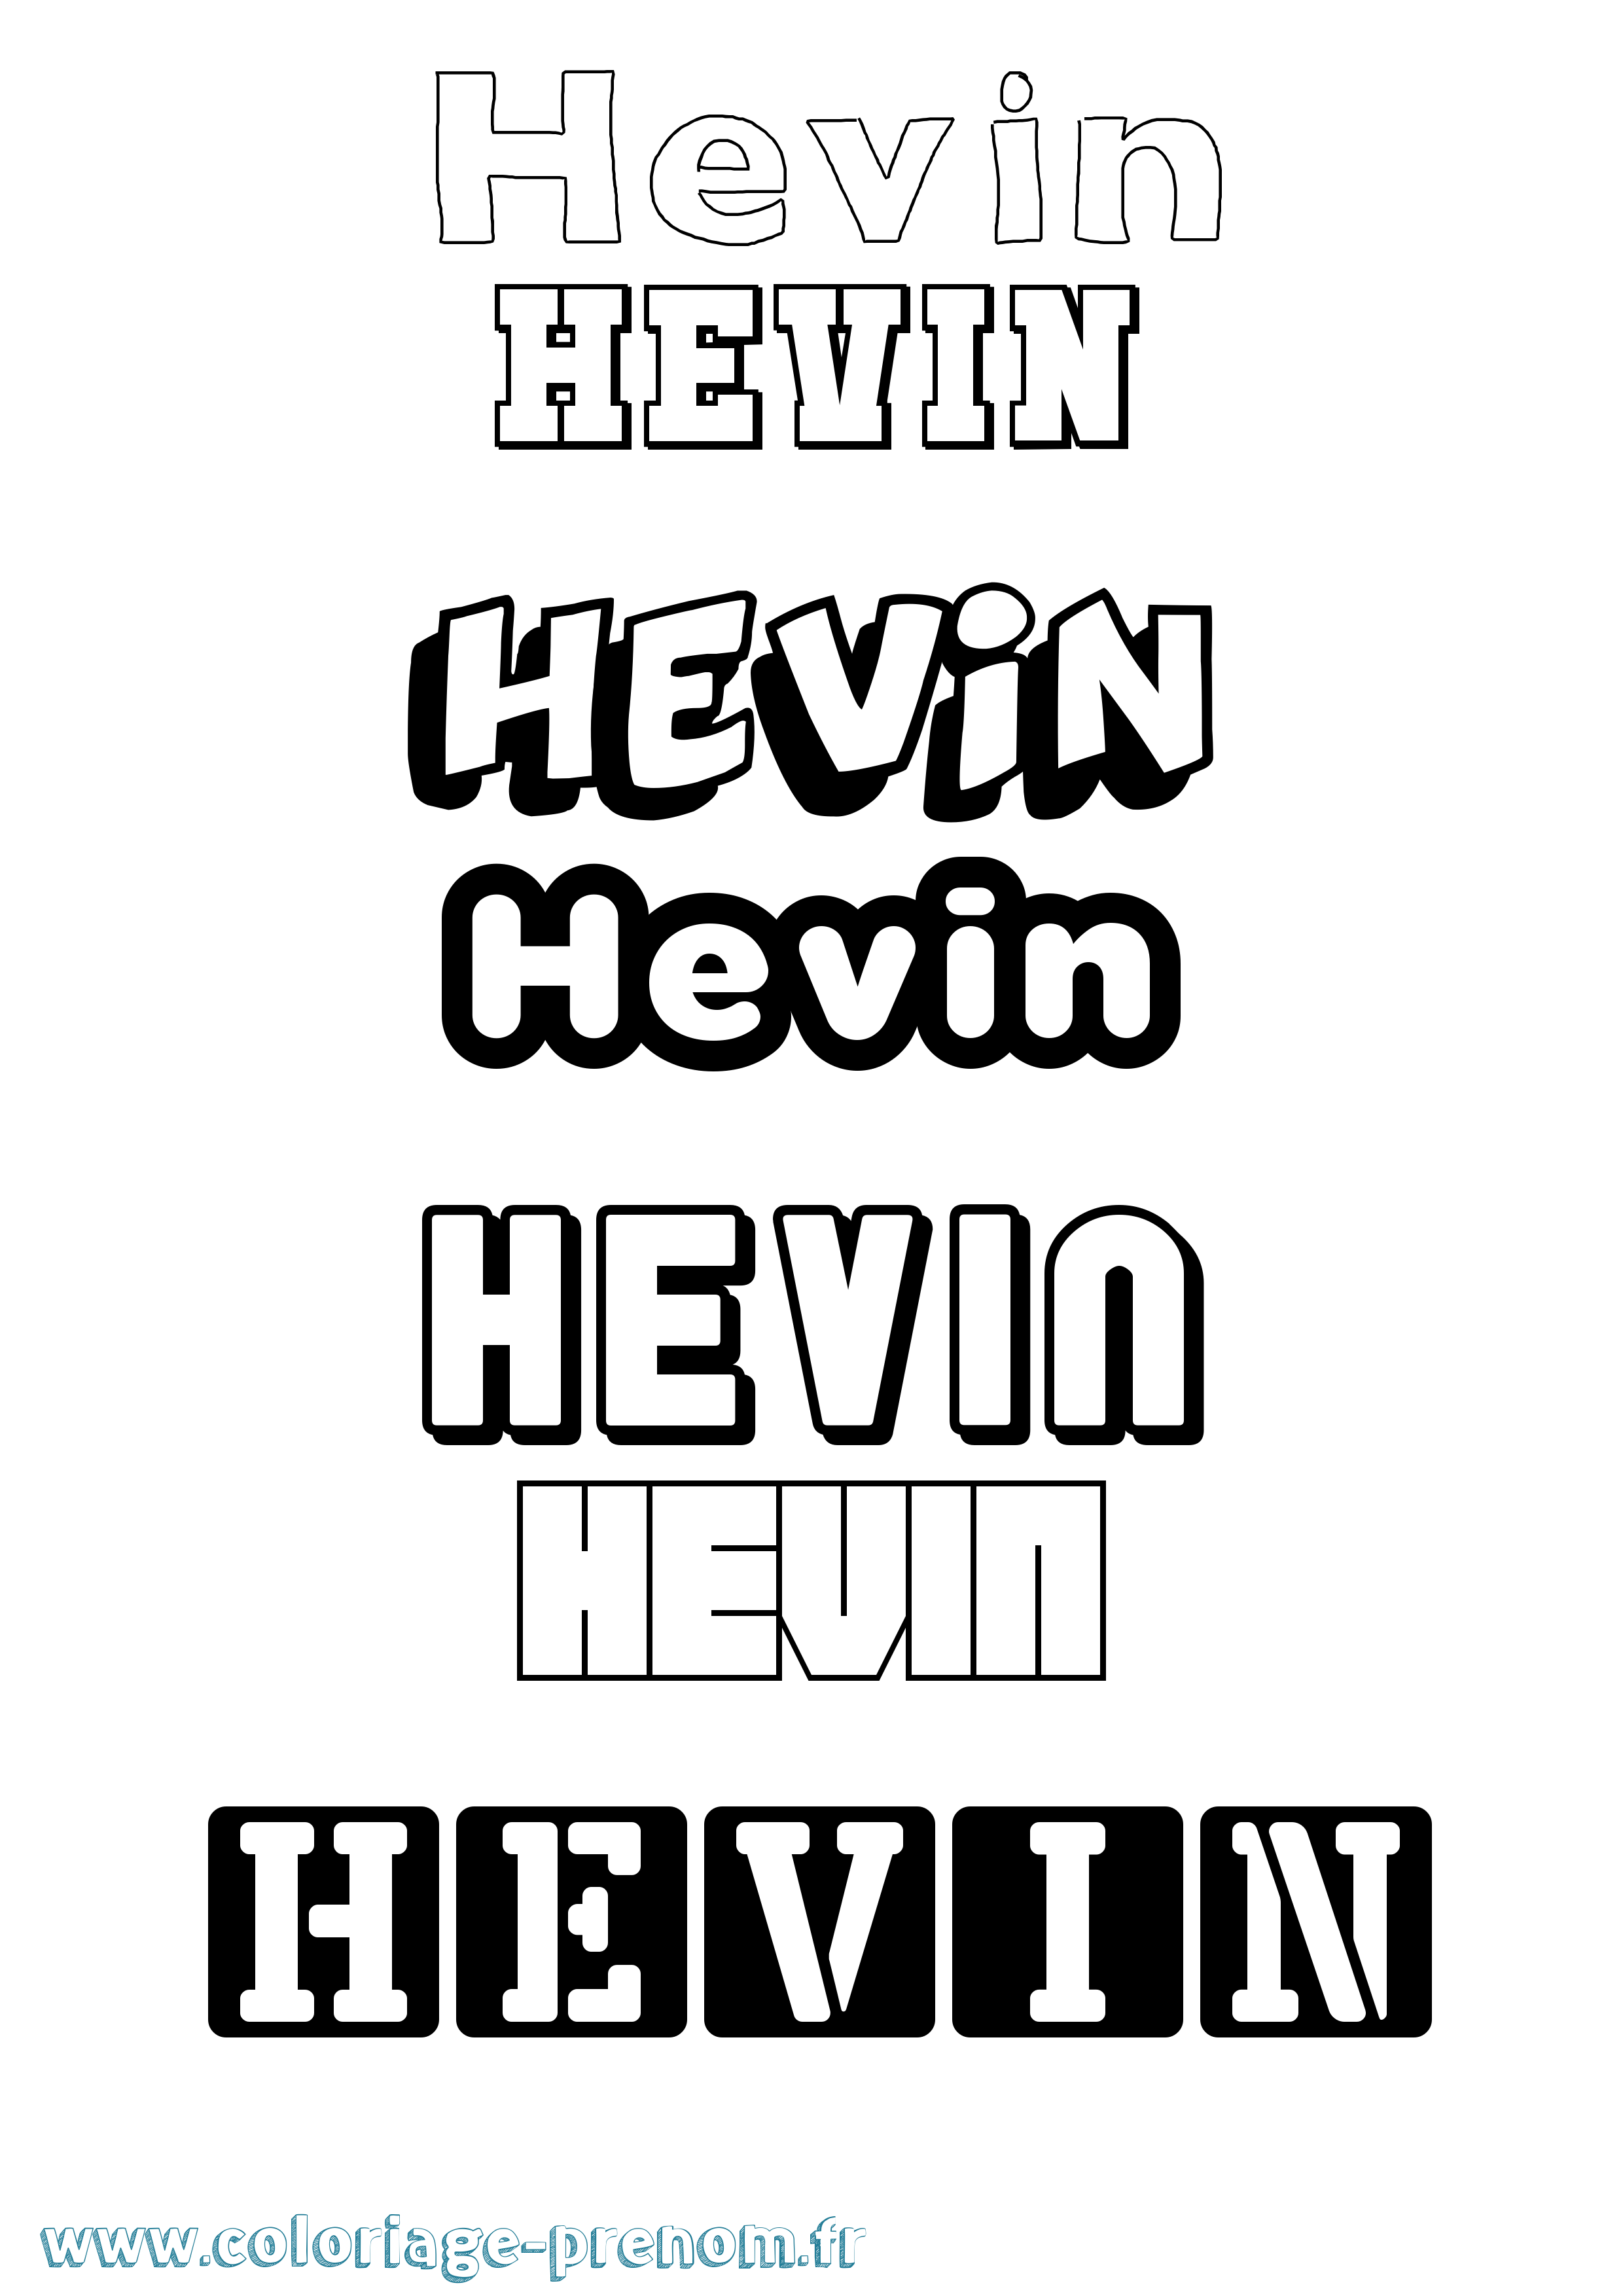 Coloriage prénom Hevin Simple